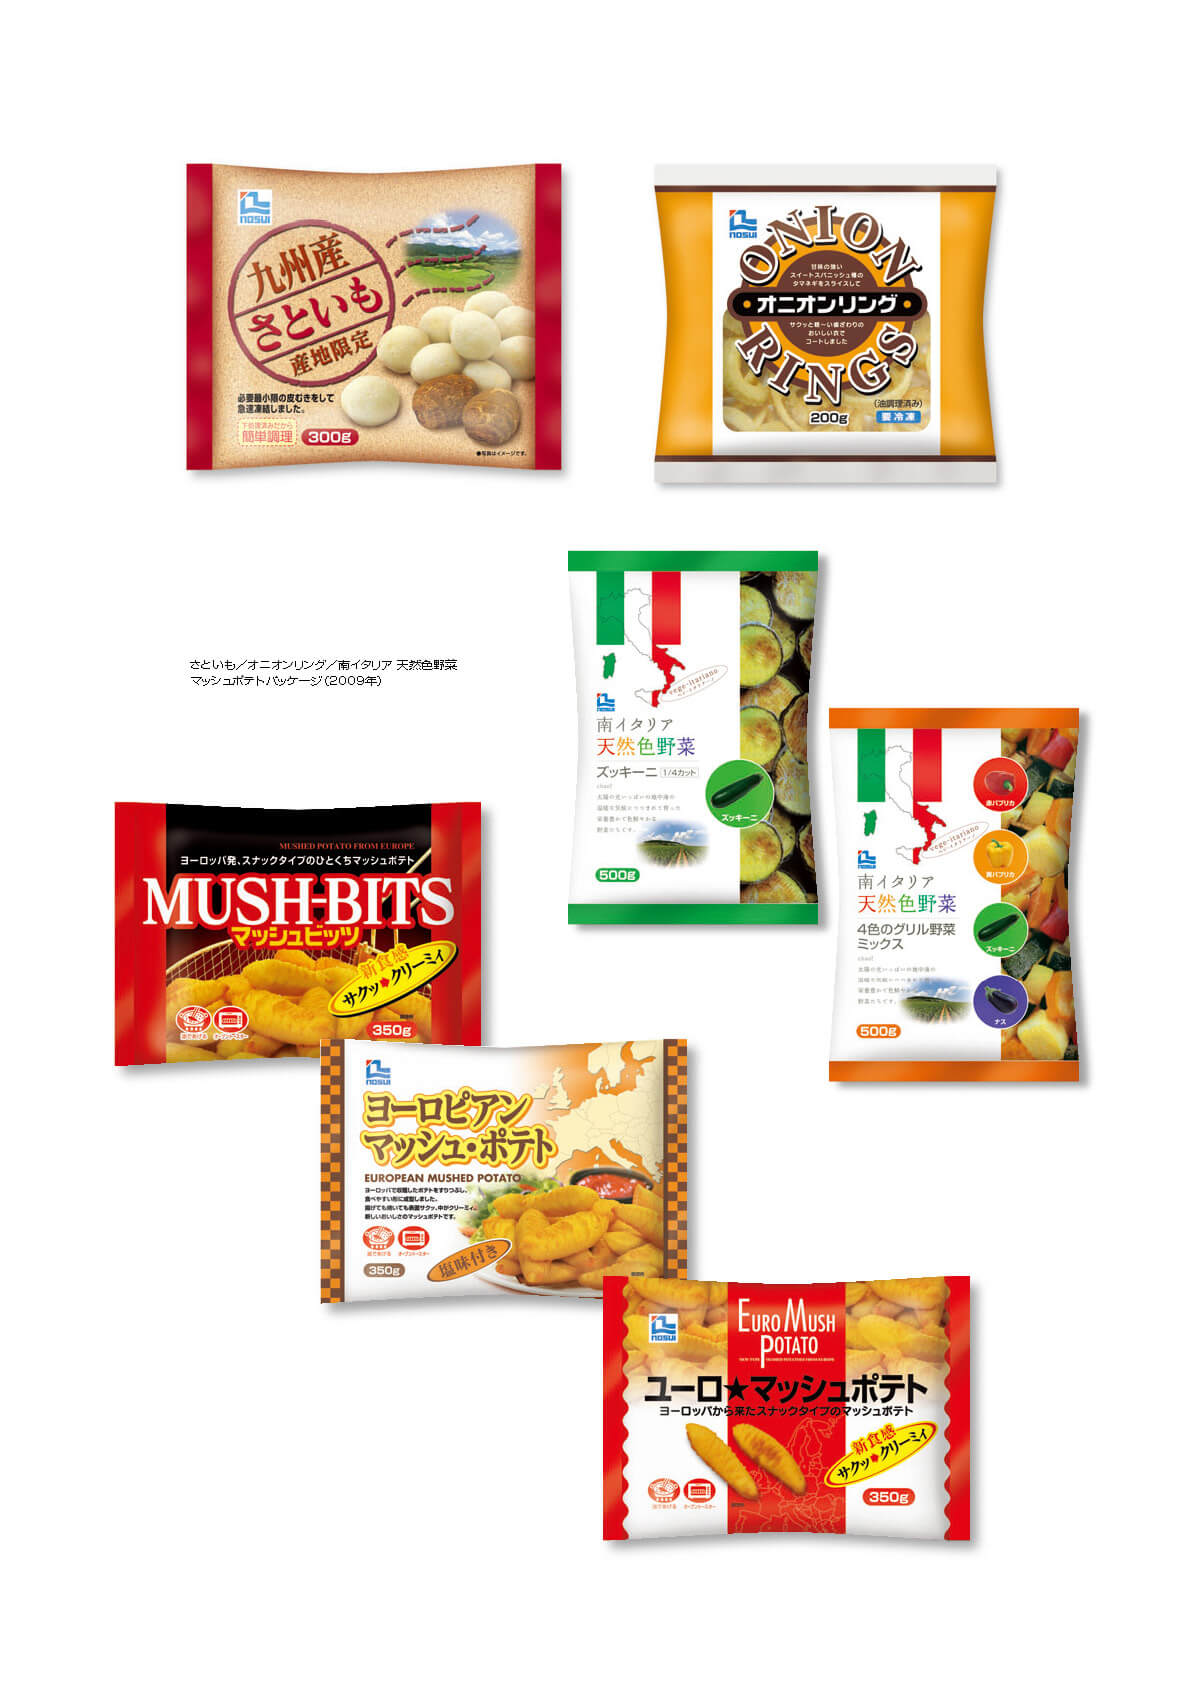 さといも／オニオンリング／南イタリア 天然色野菜
マッシュポテトパッケージ（2009年）